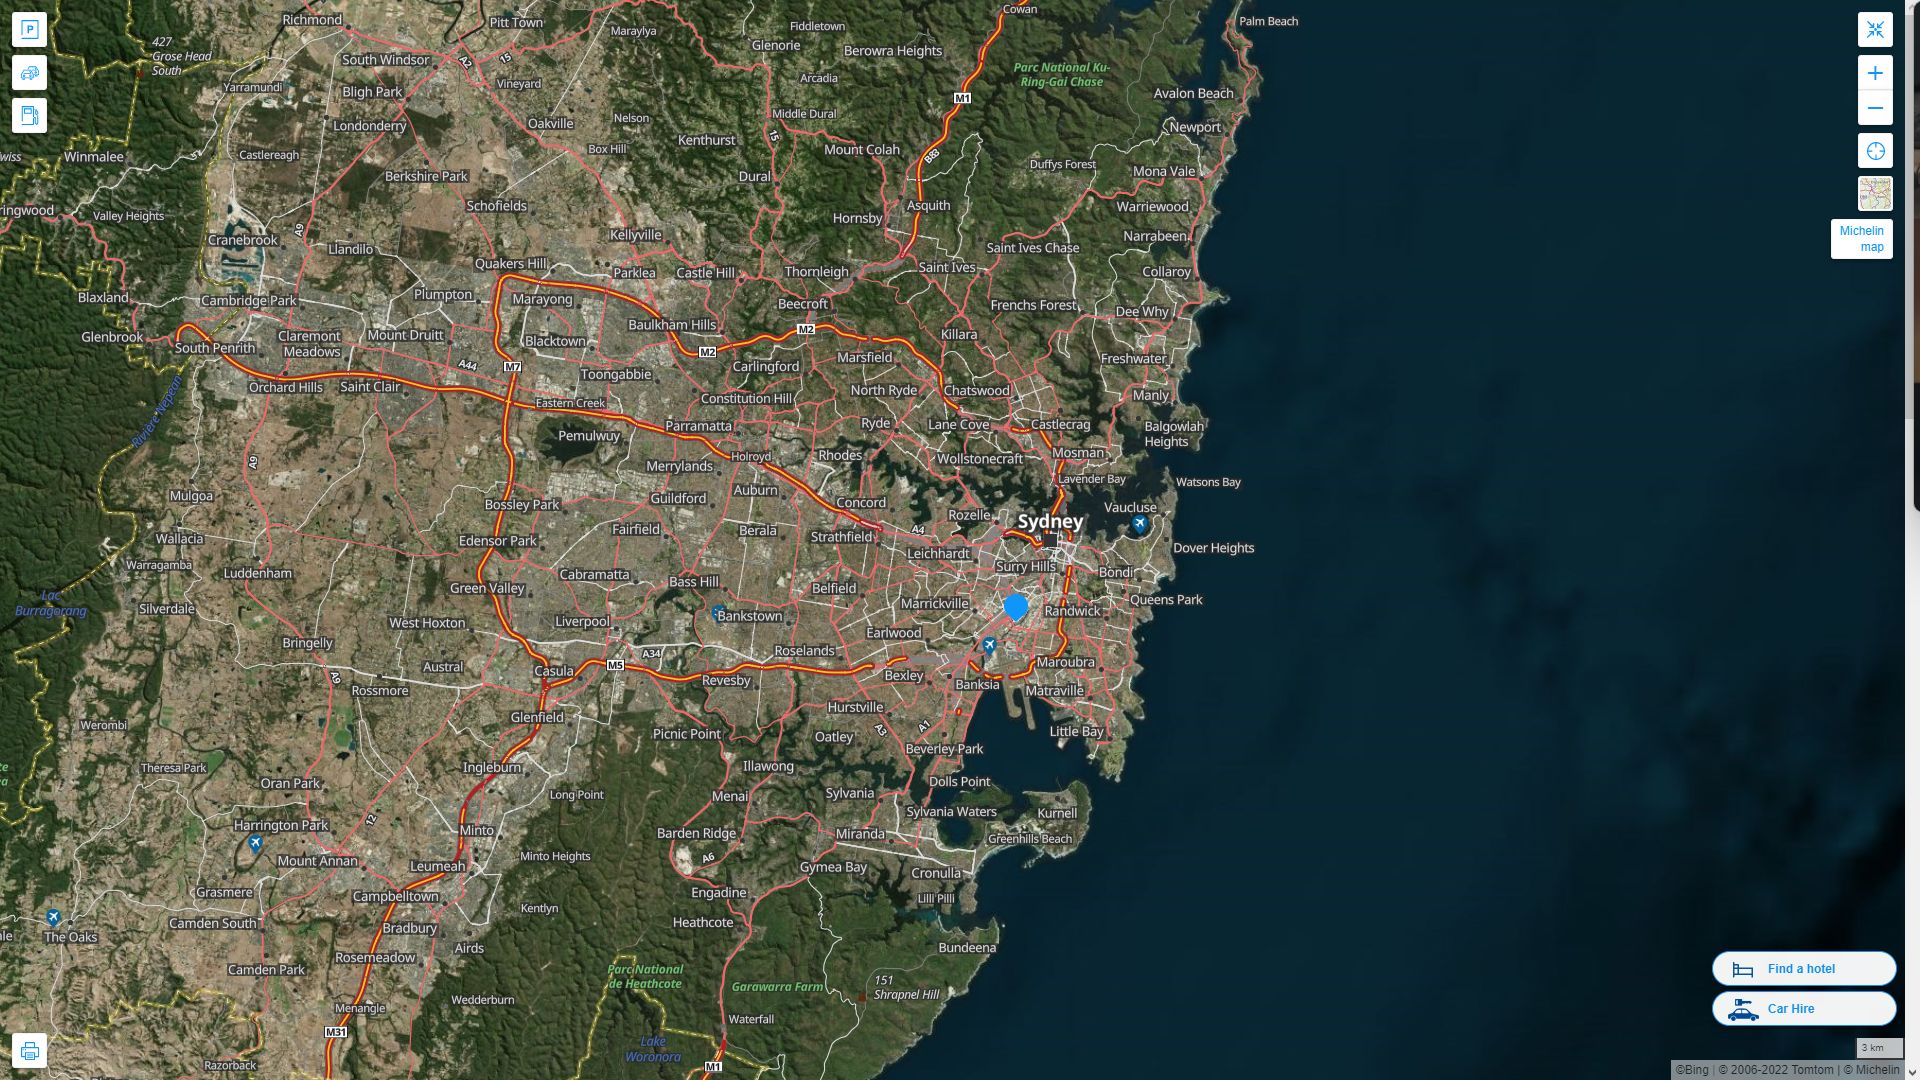 Sydney Australie Autoroute et carte routiere avec vue satellite